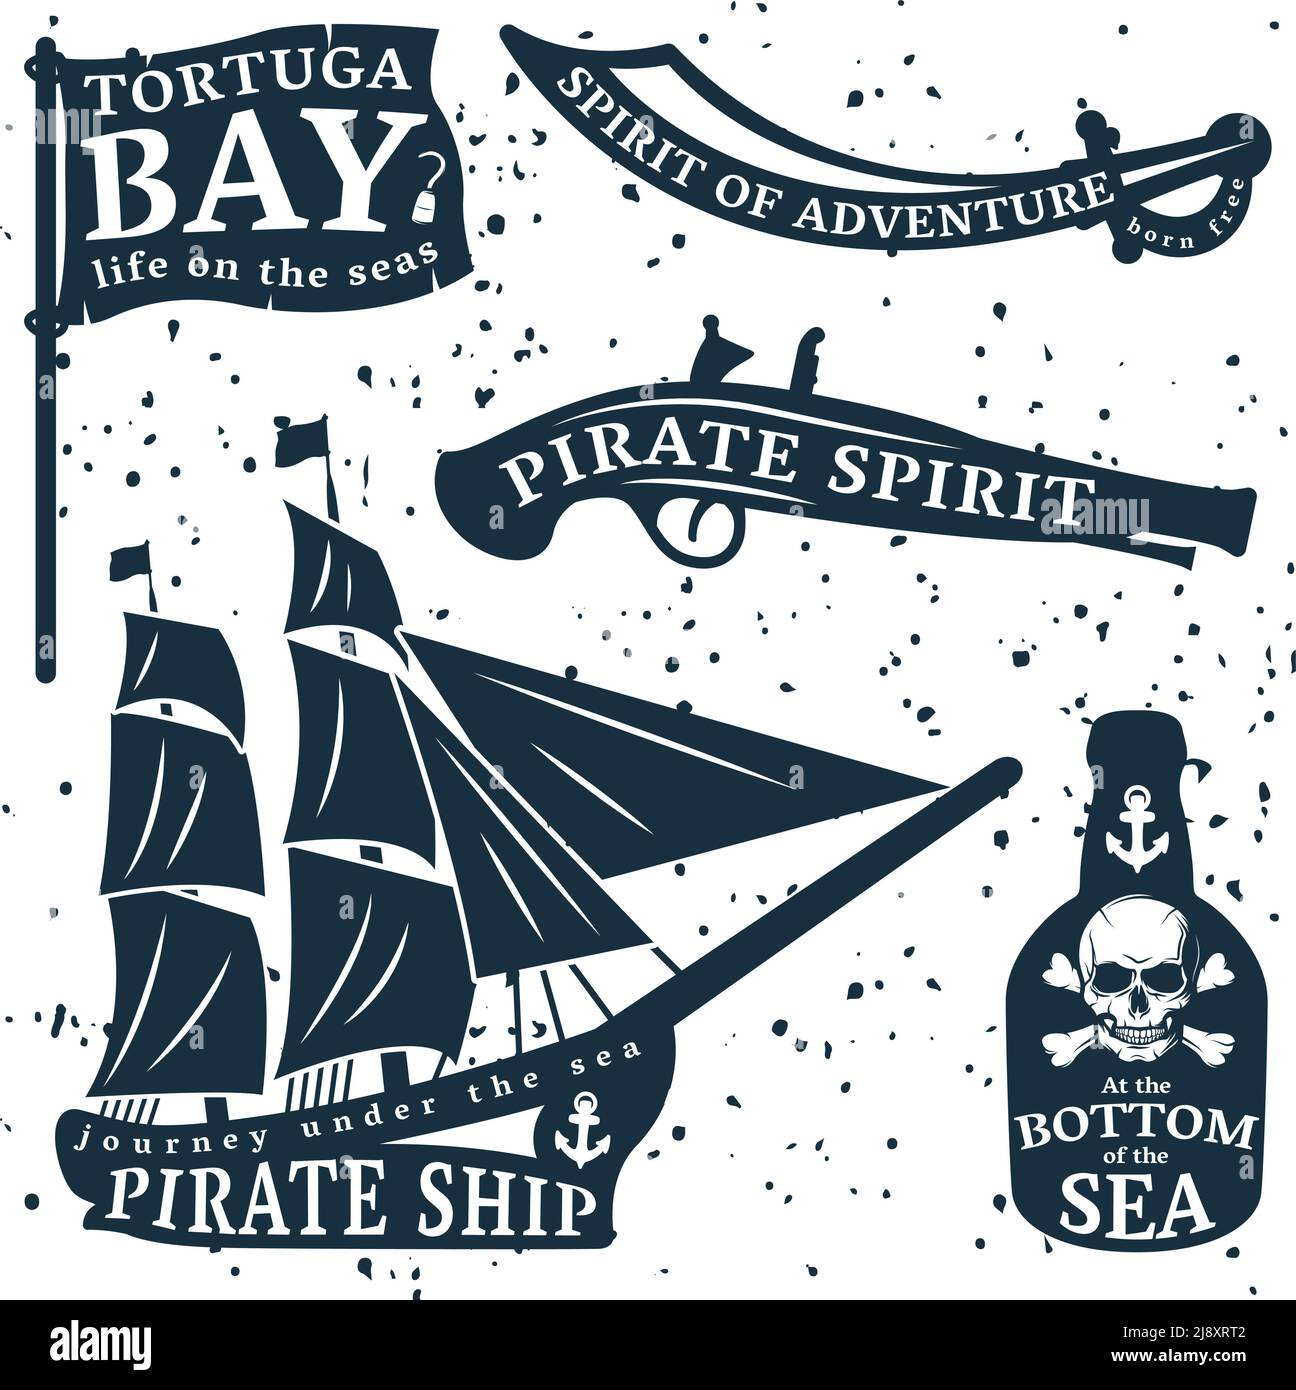 Pirates citation set avec Tortuga Bay esprit d'aventure à illustration vectorielle de la description du fond de la mer Illustration de Vecteur